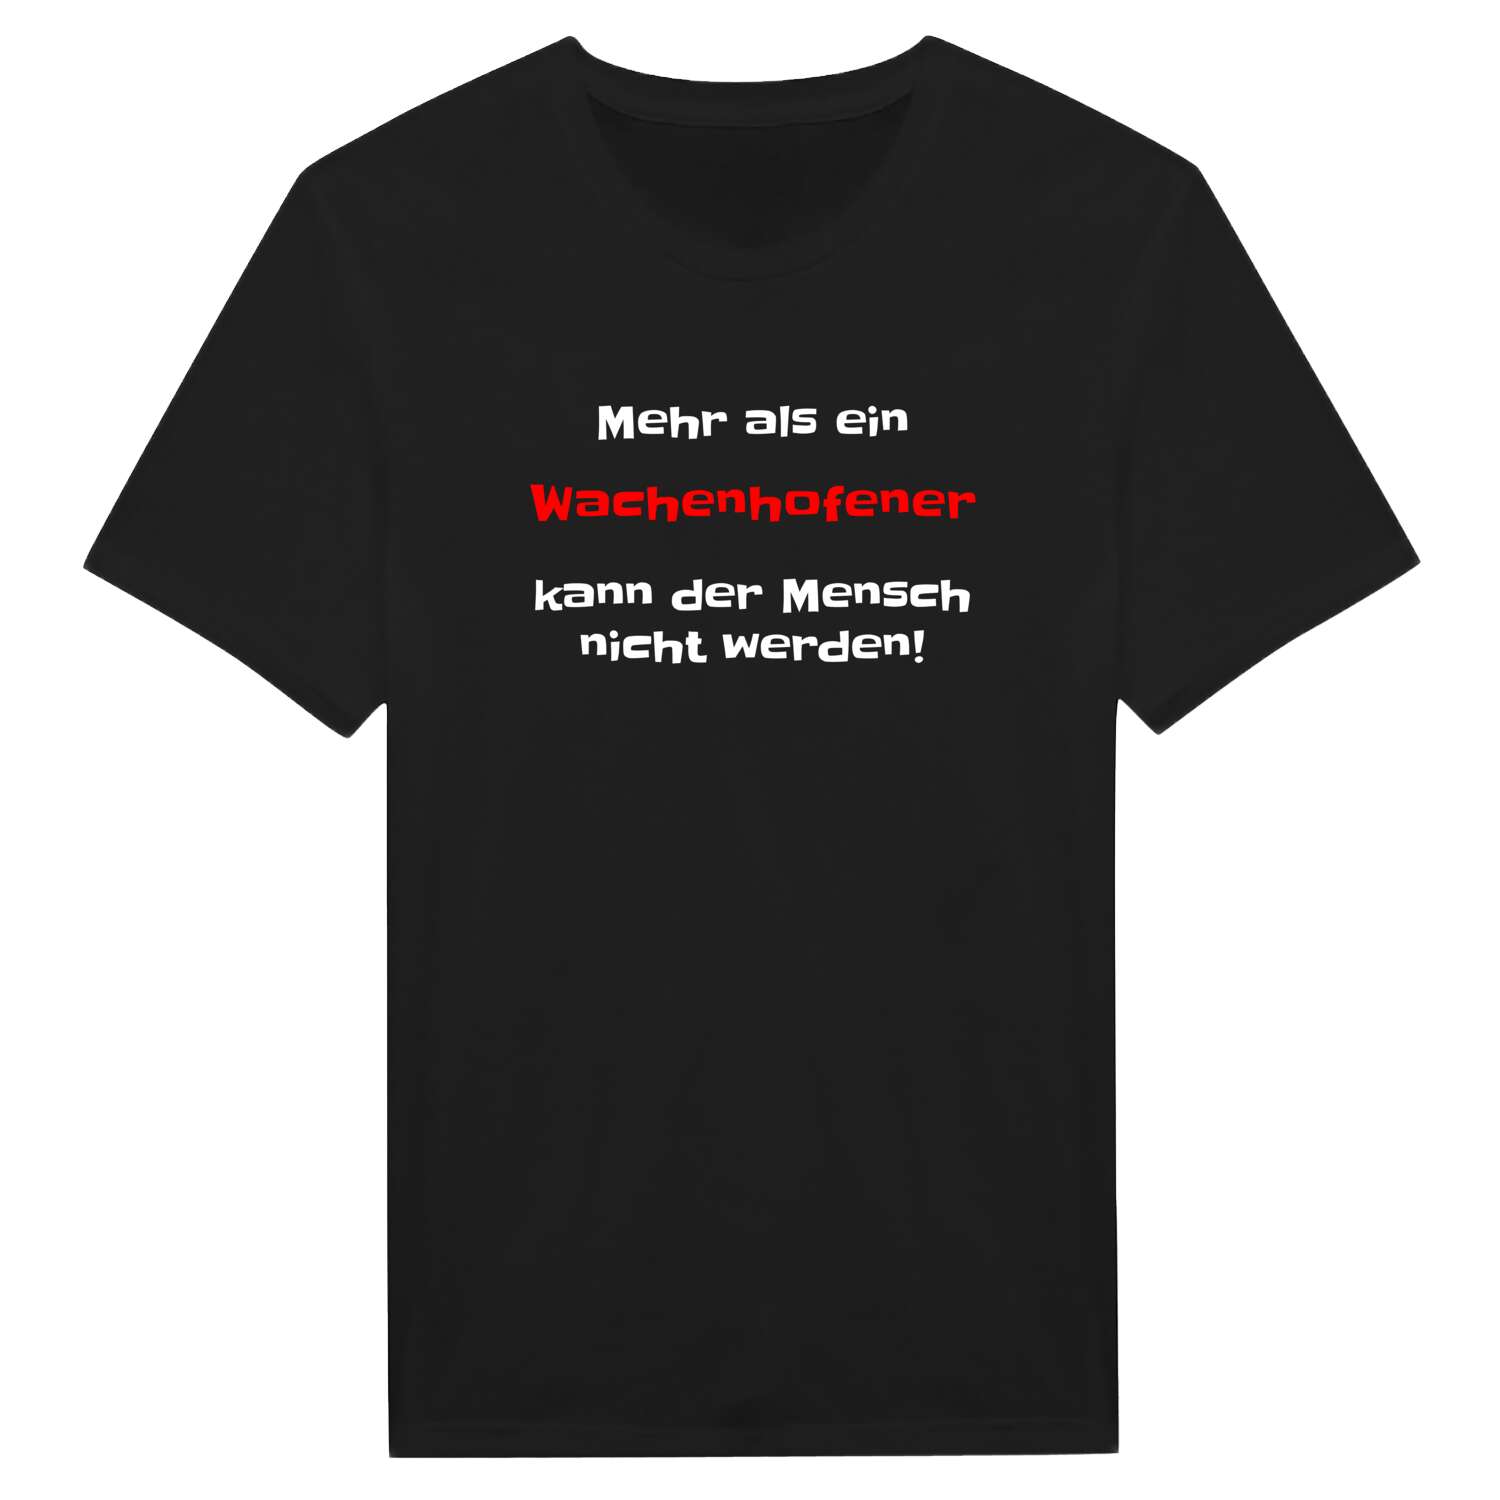 Wachenhofen T-Shirt »Mehr als ein«